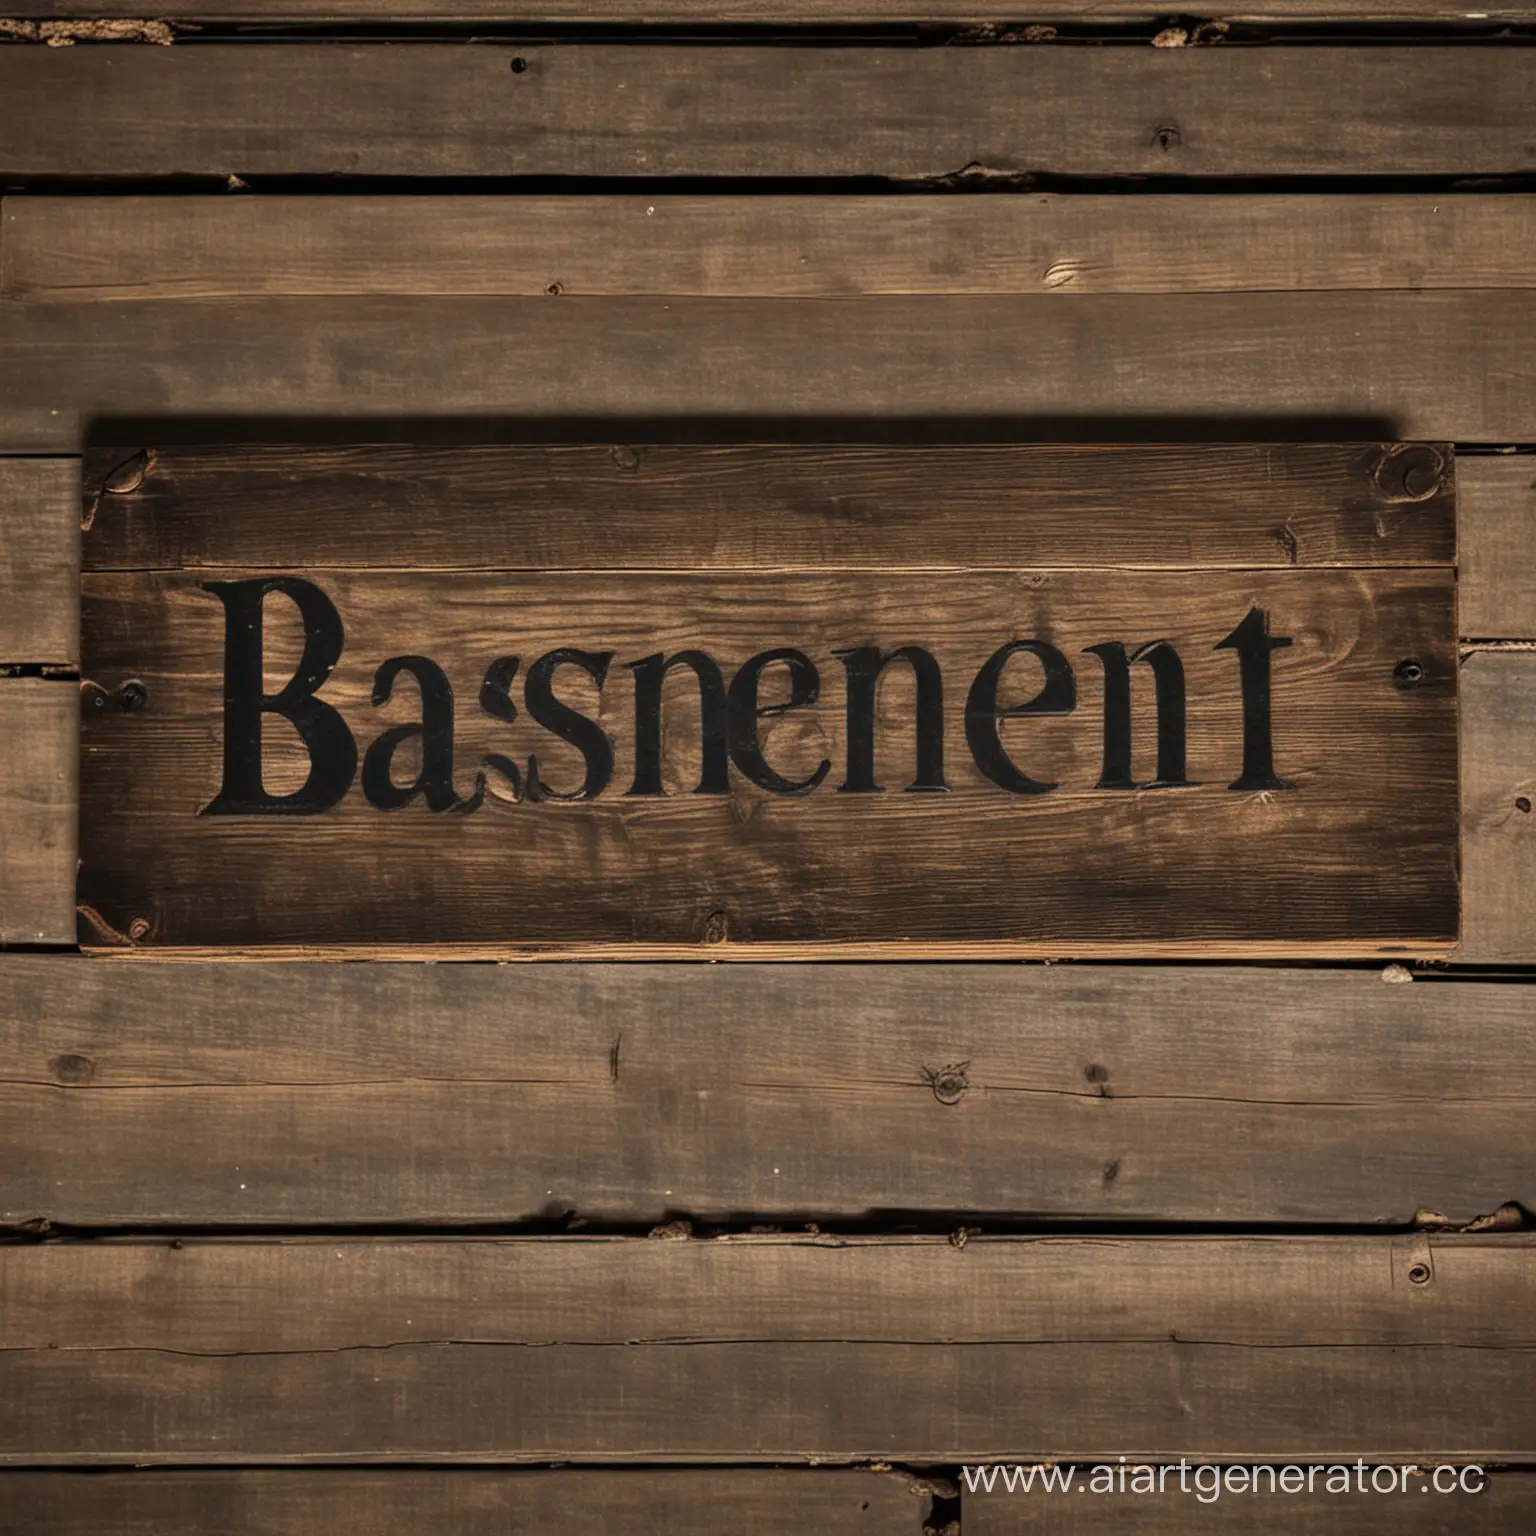 dark basement, wooden sign with text "Basement"
